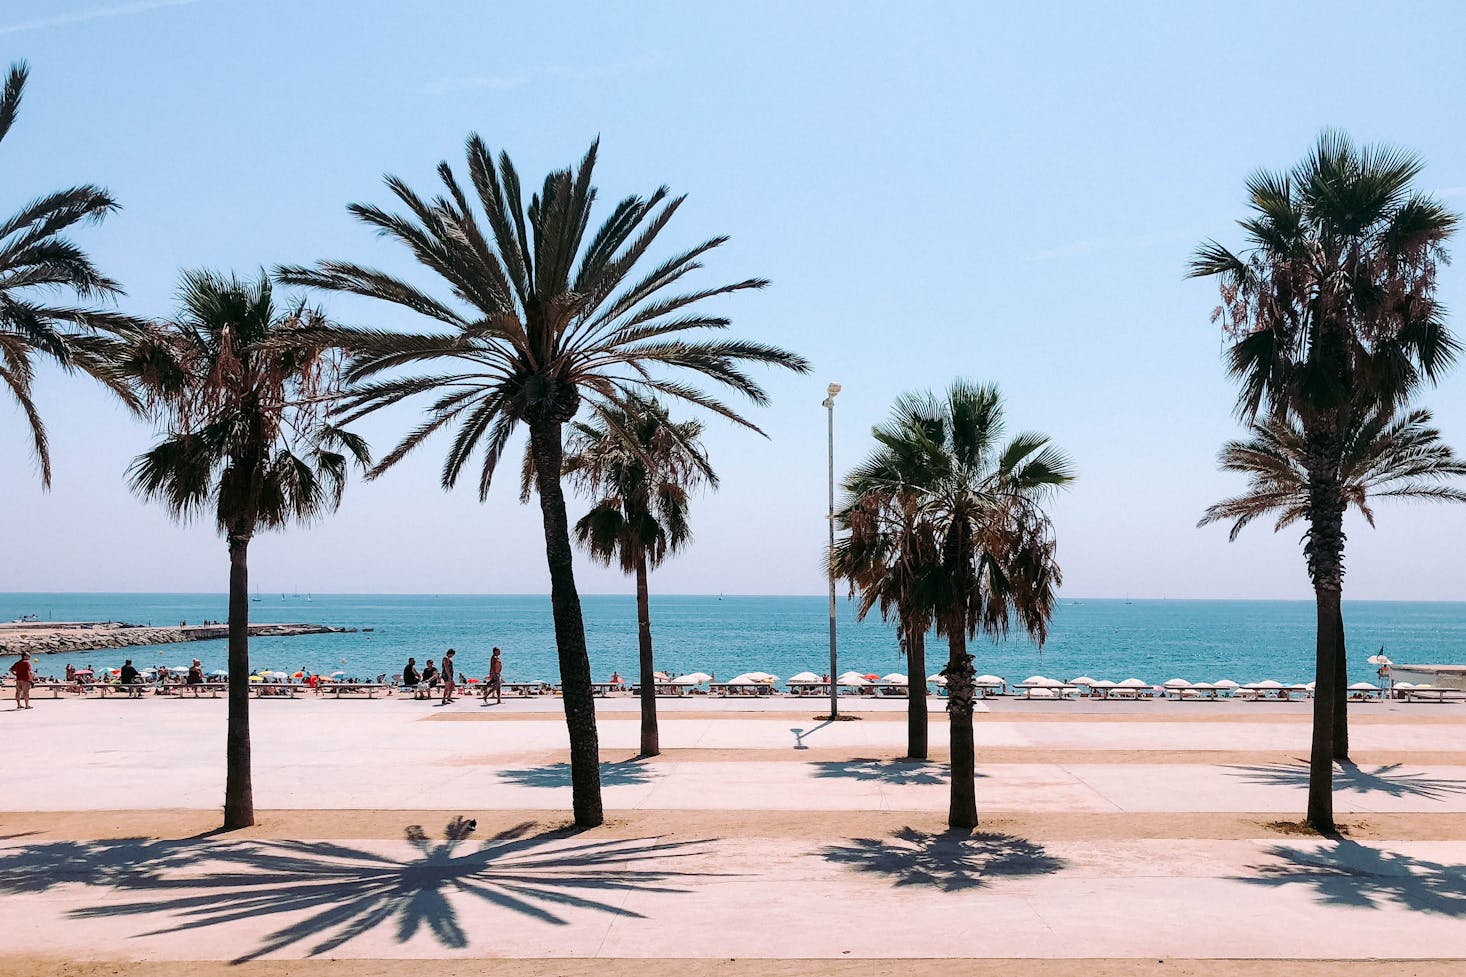 Beaches near Barcelona